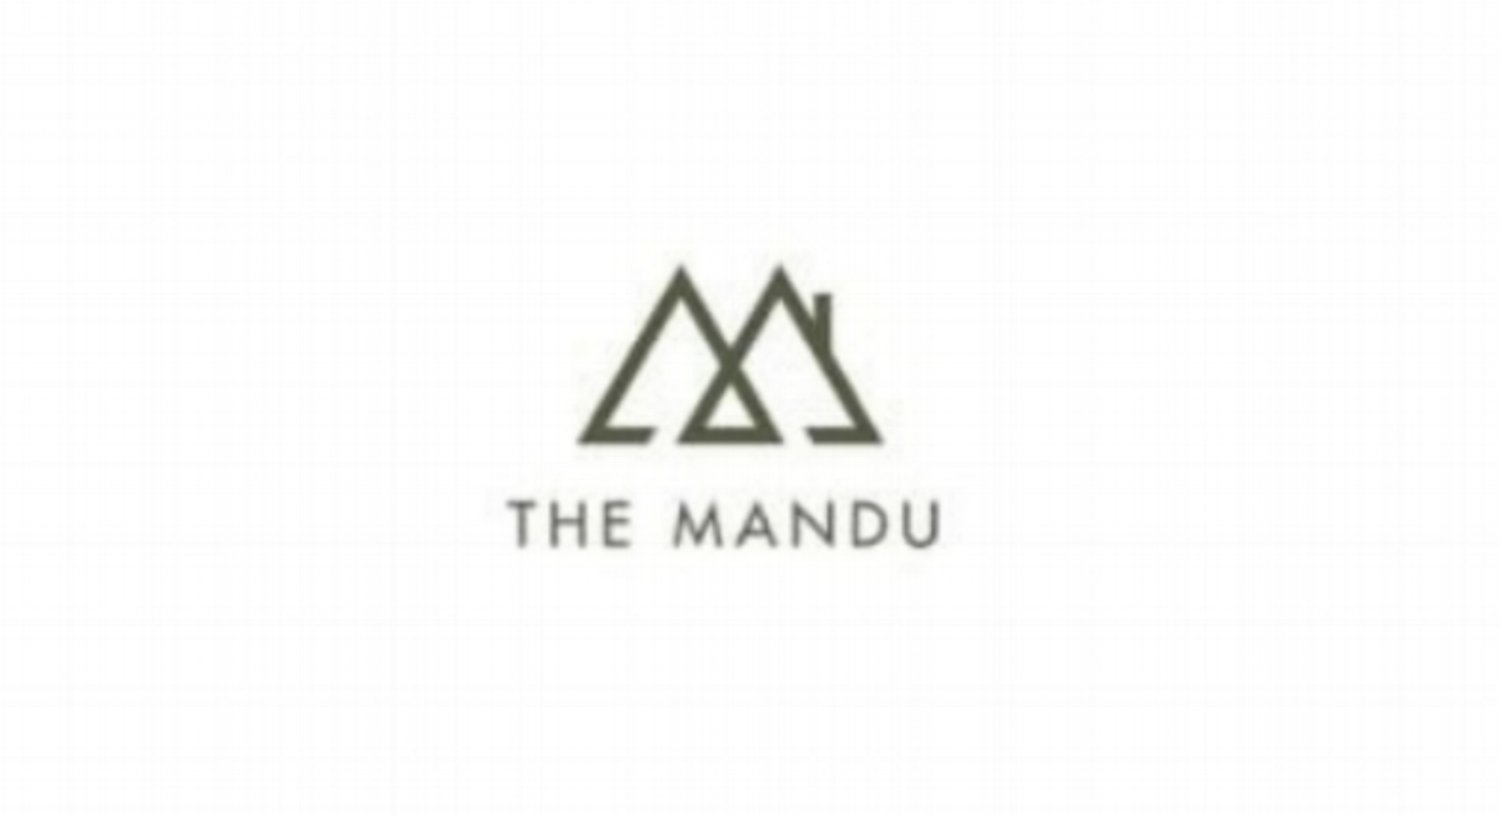 THE MANDU